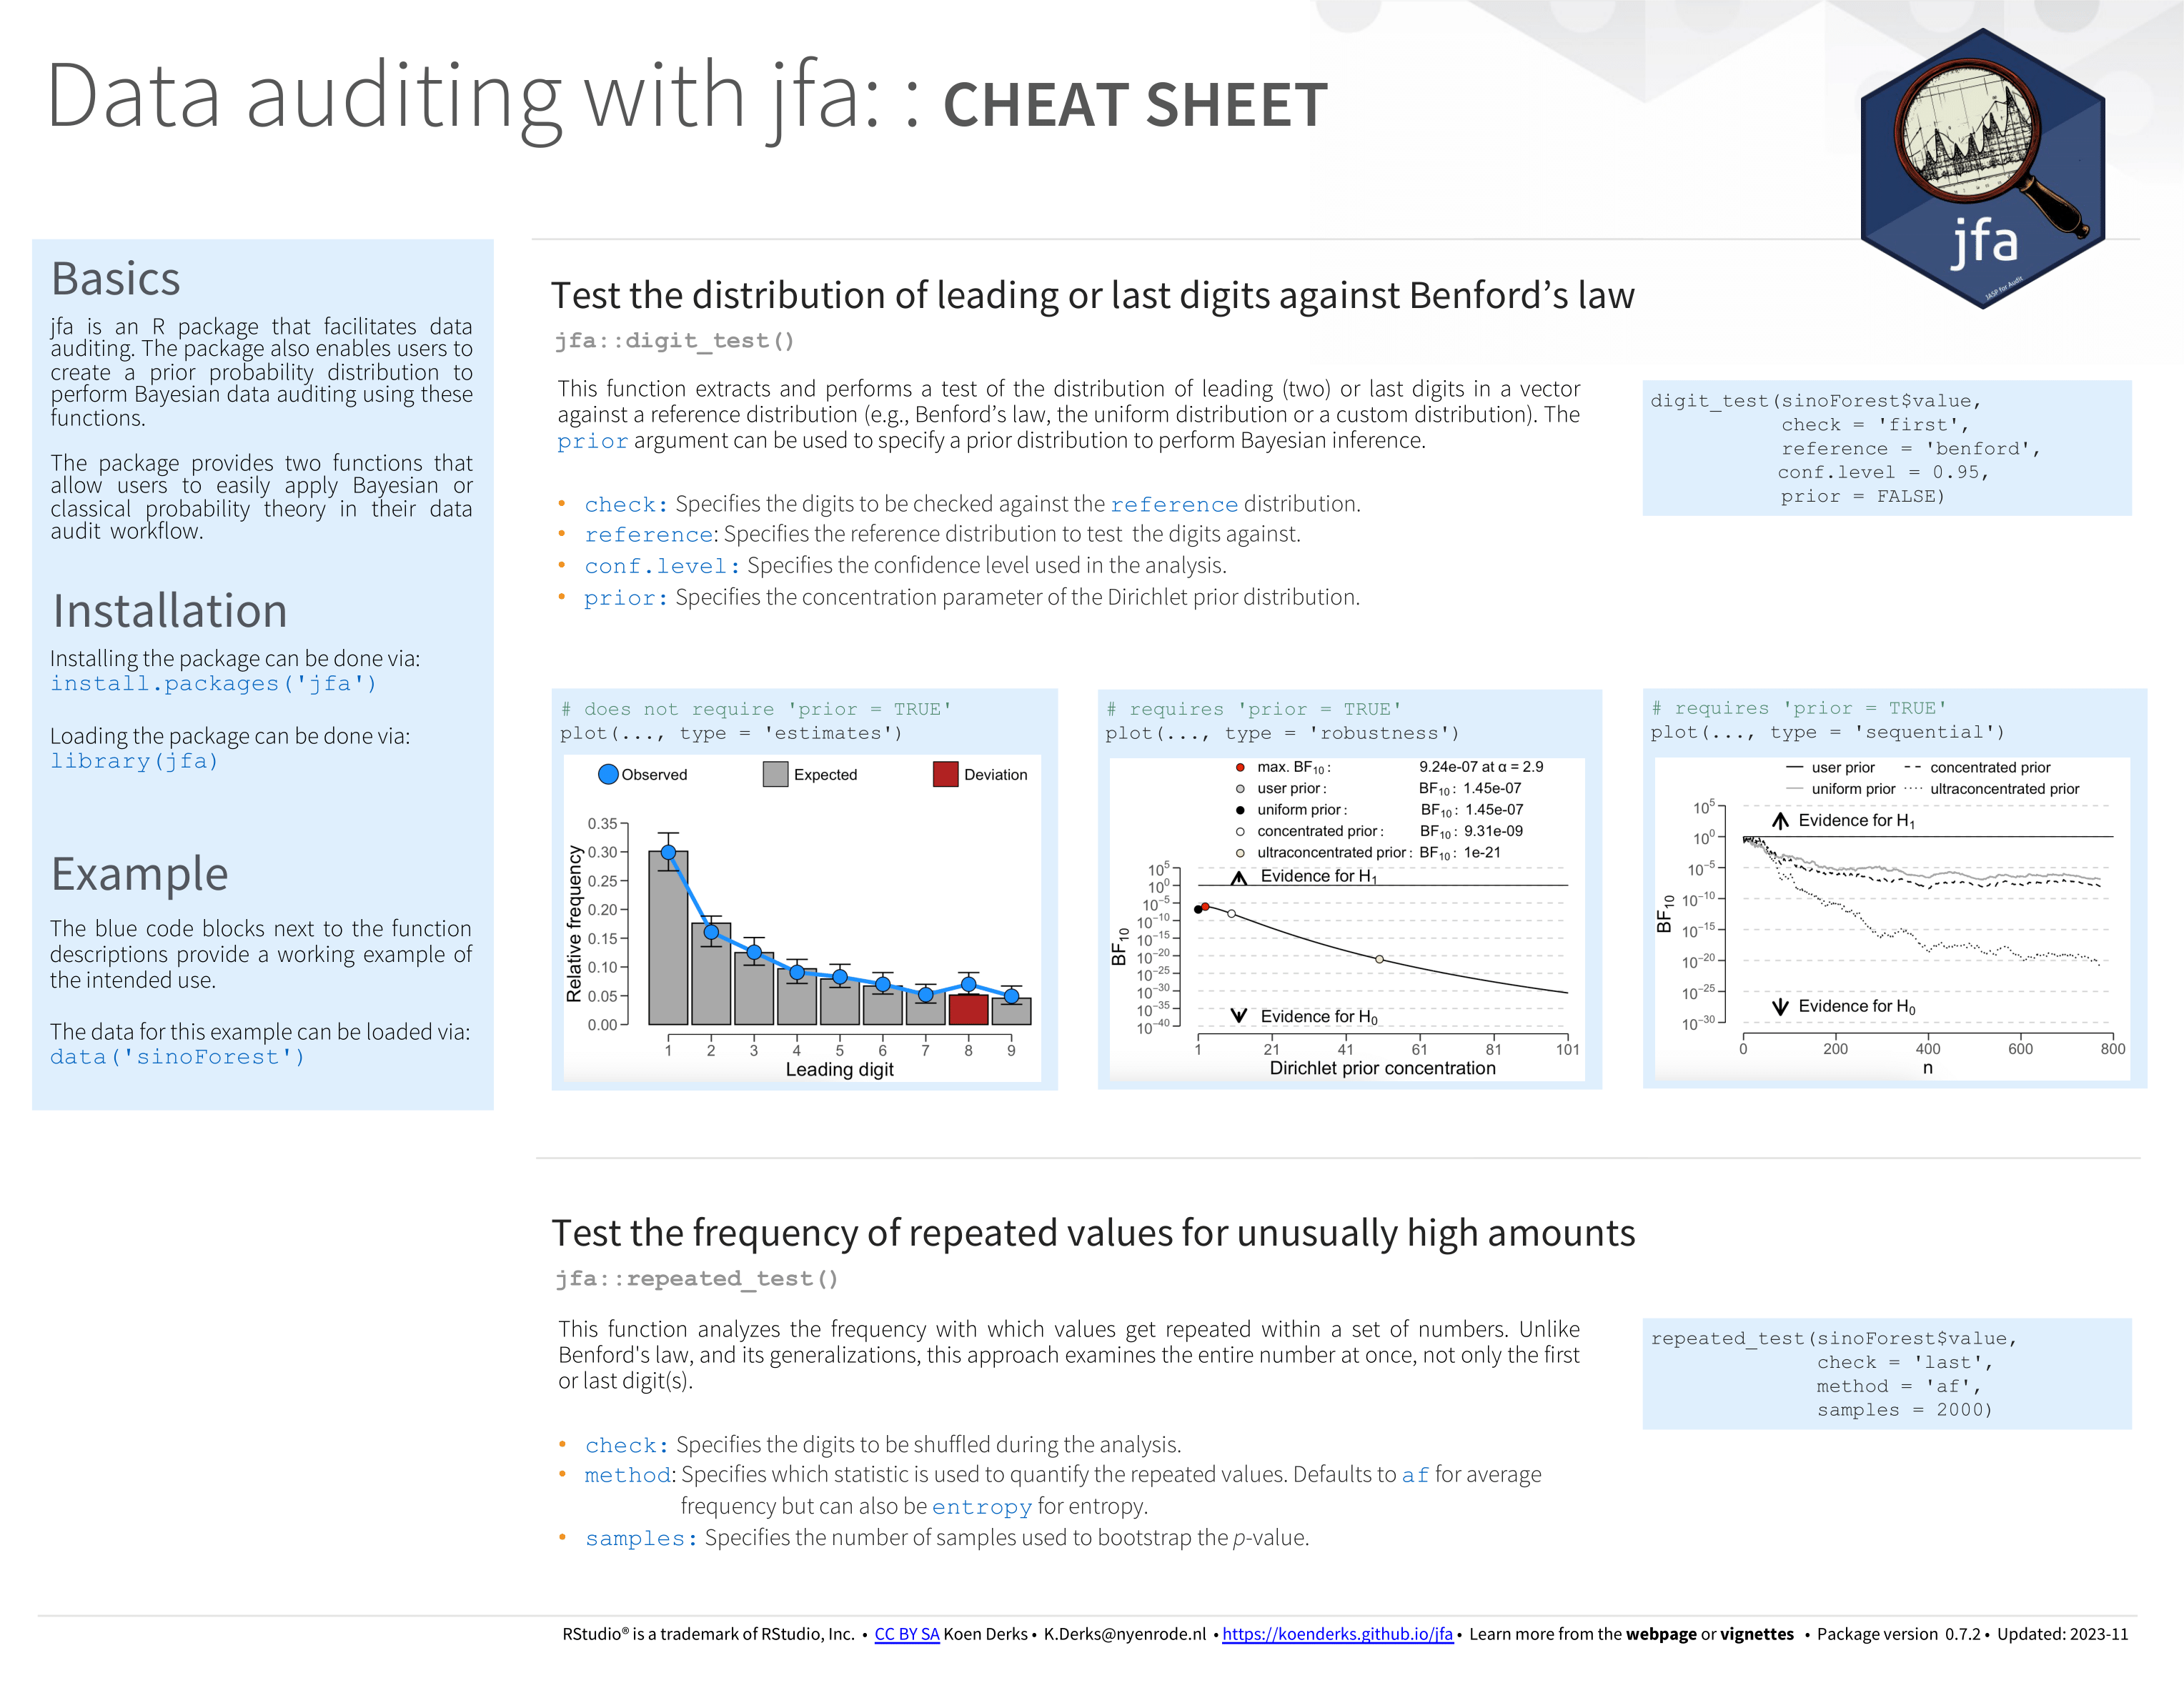 cheatsheet-data